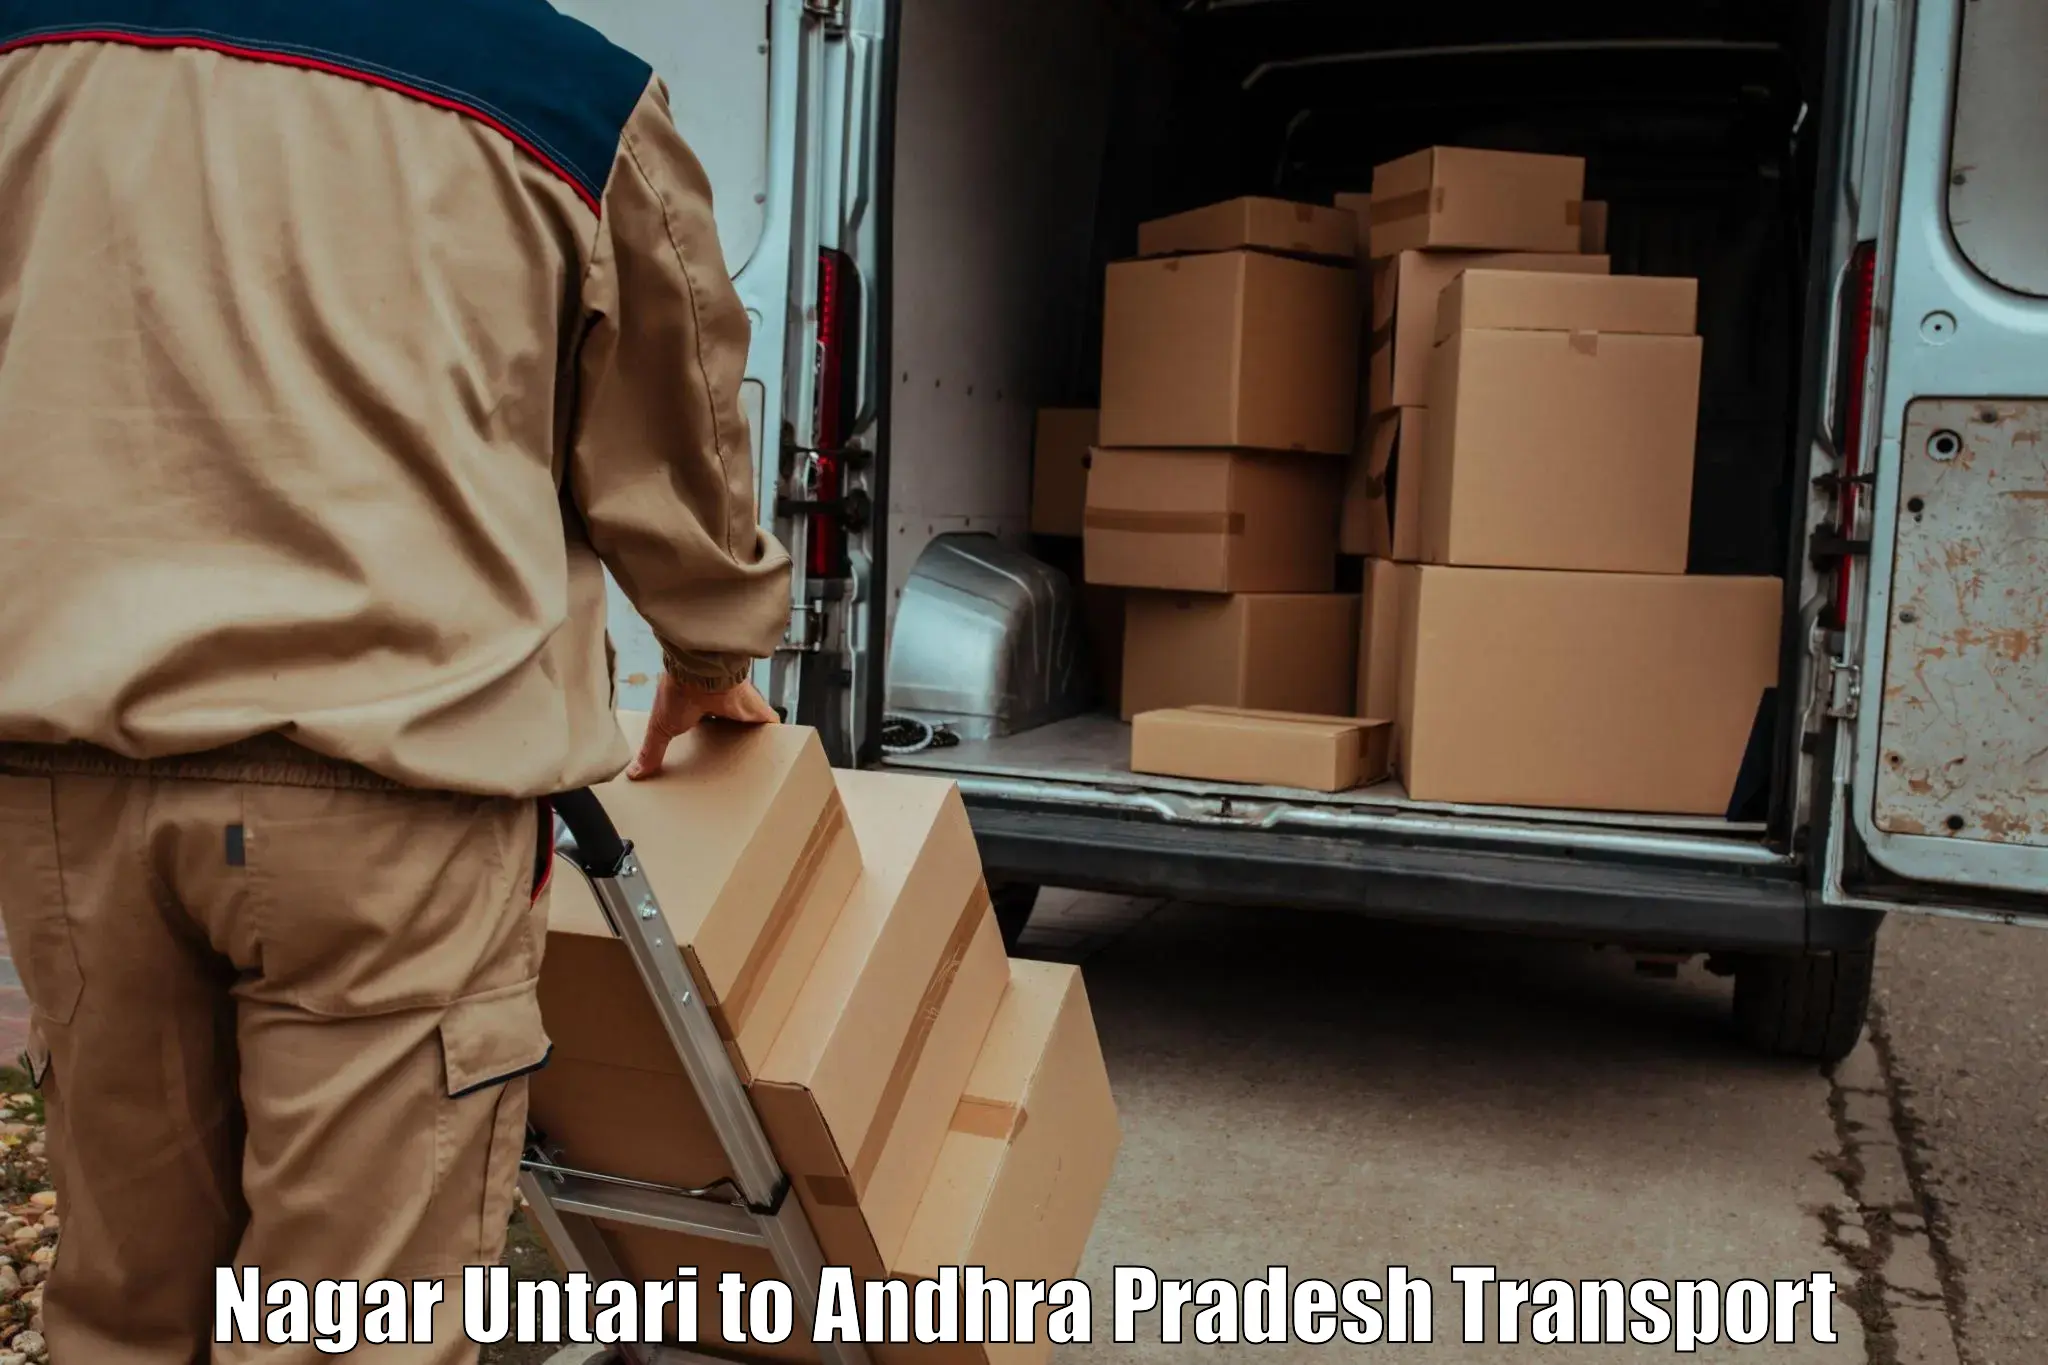 Cargo transportation services Nagar Untari to Velgodu